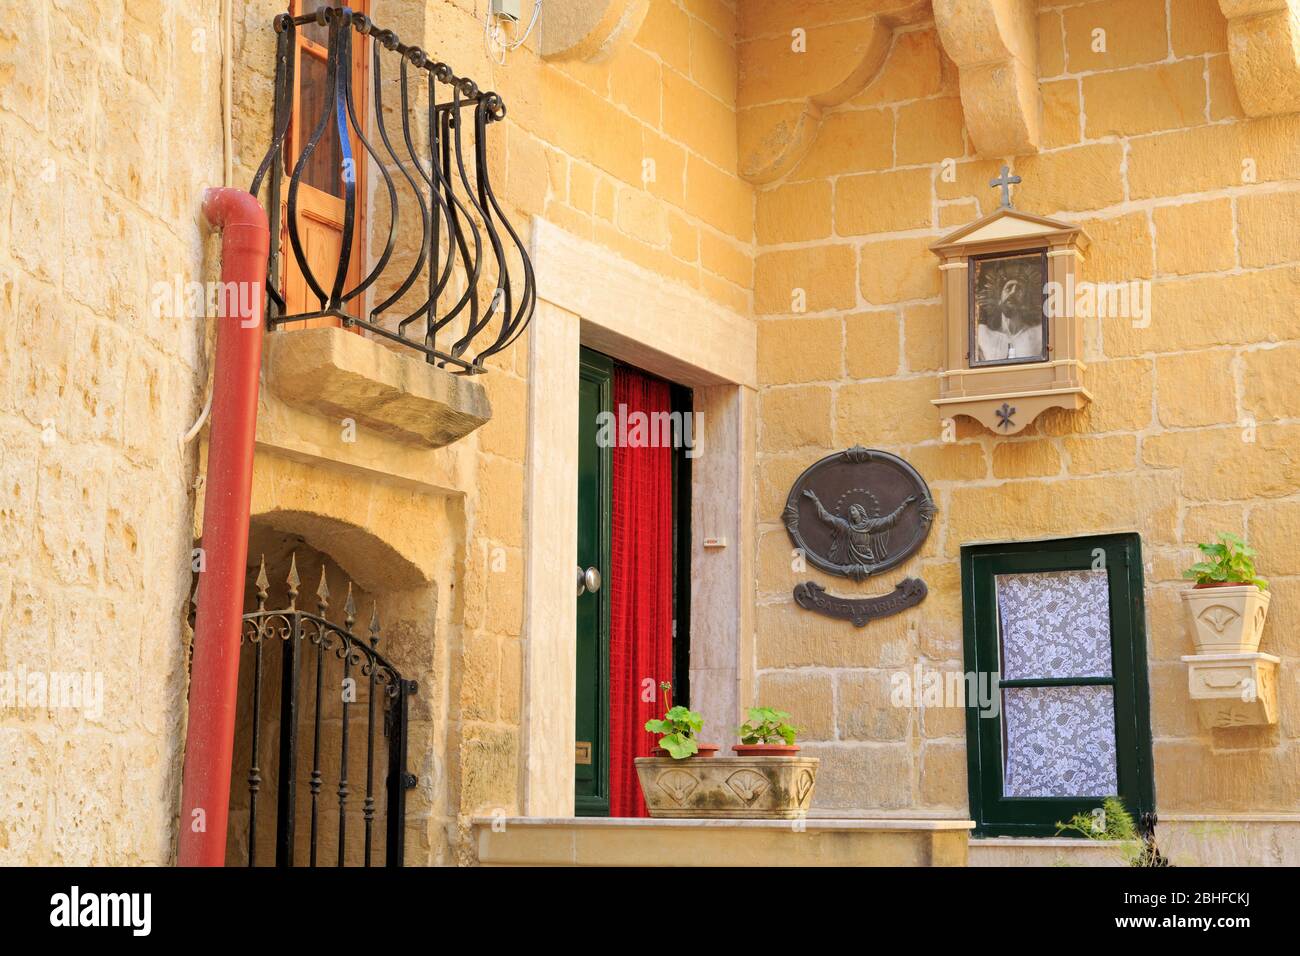 Architecture, Victoria City, Gozo Island, Malta, Europe Stock Photo